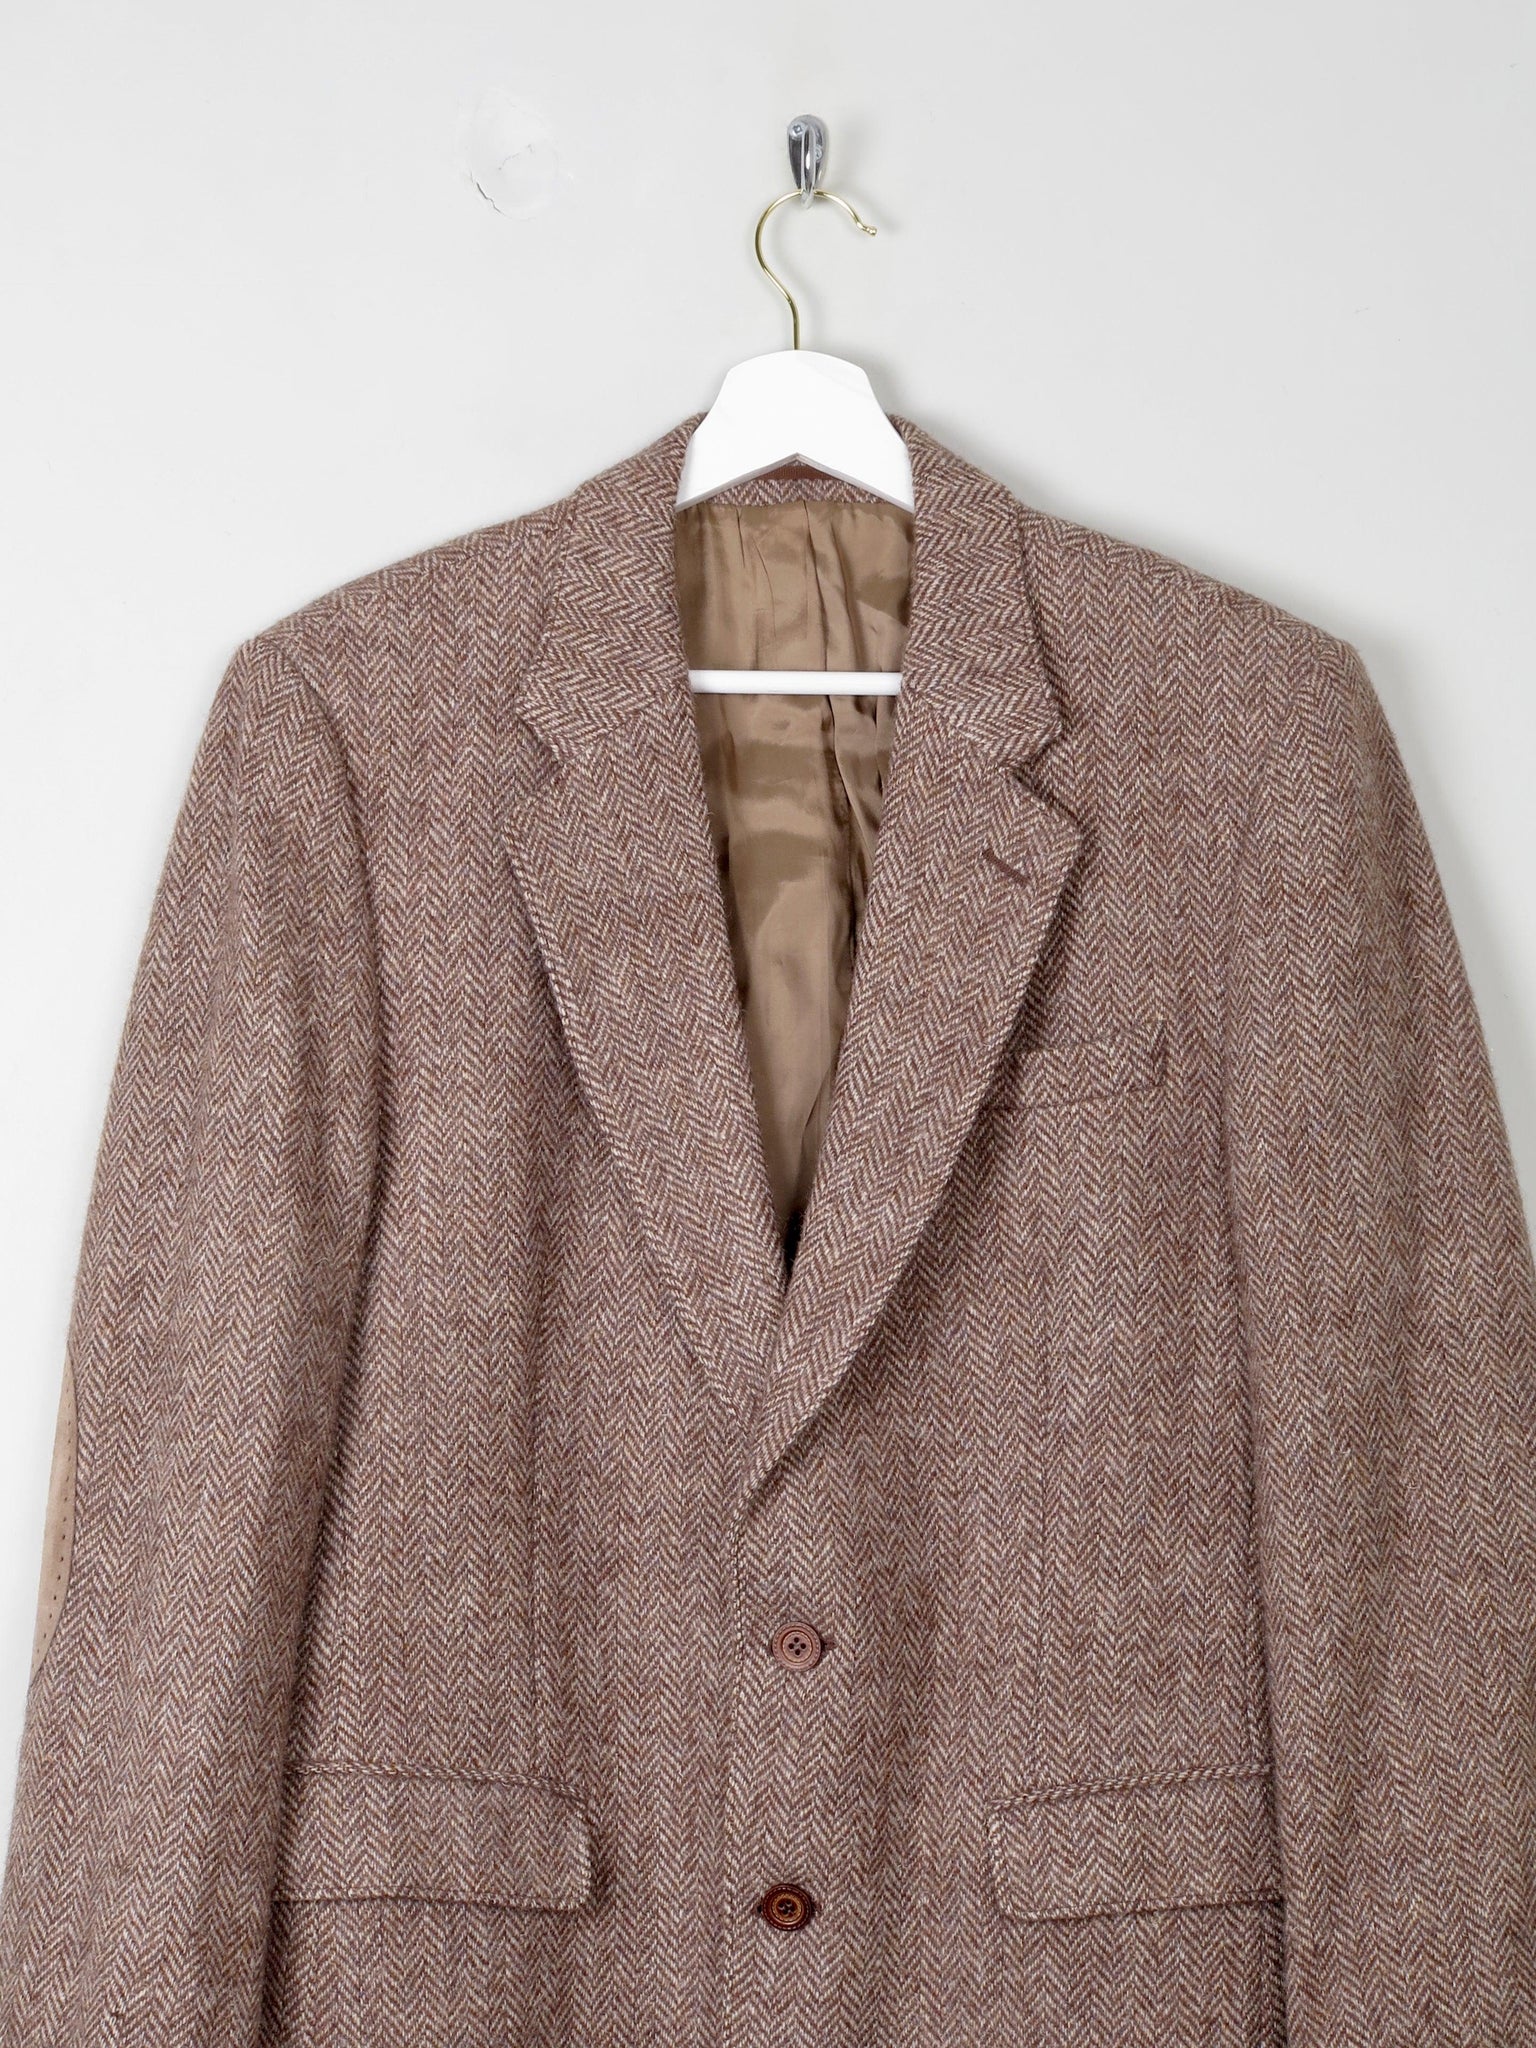 Men's 1970s Vintage Brown Tweed Jacket 38" - The Harlequin